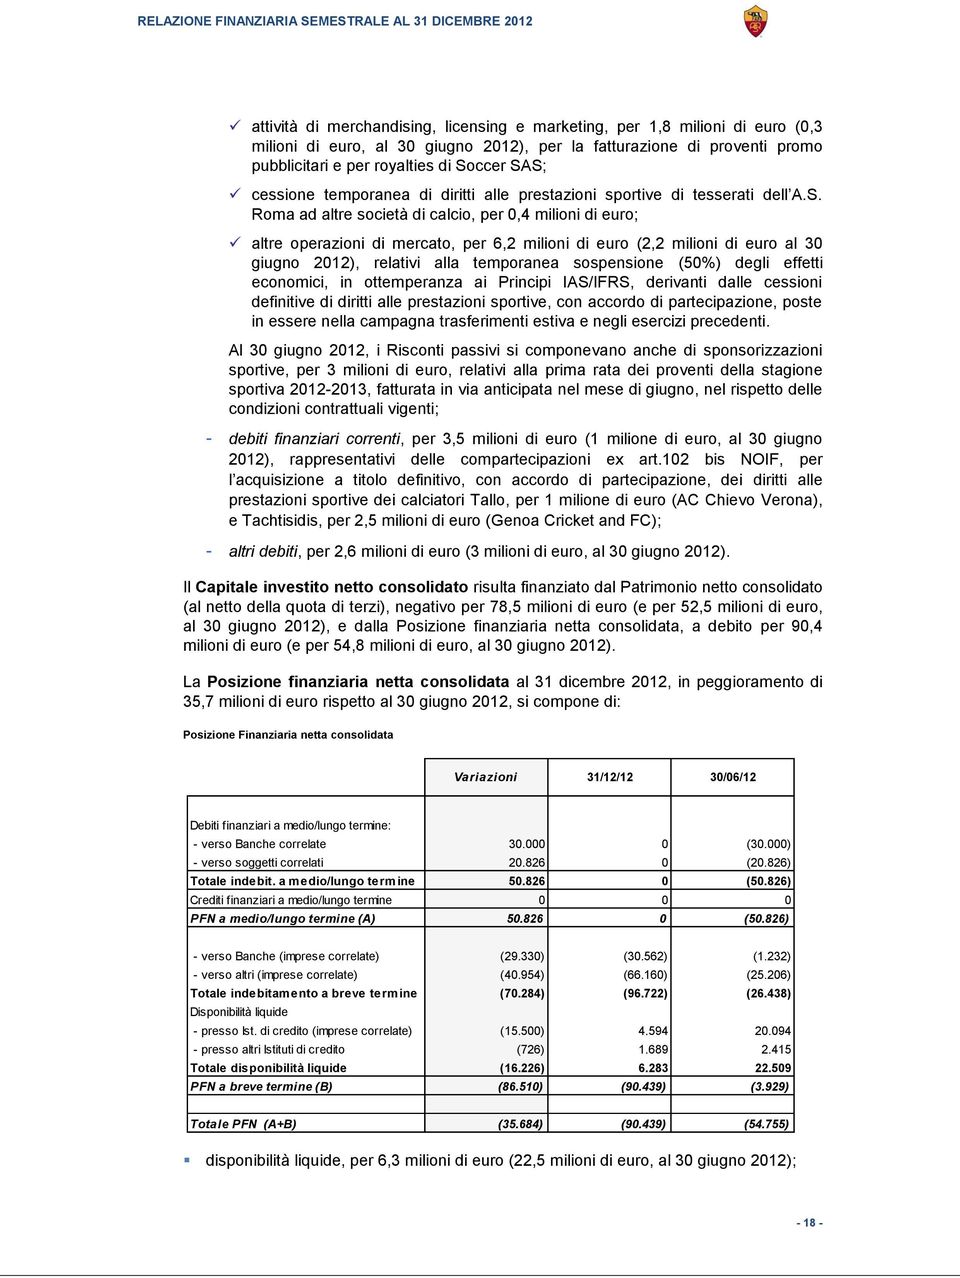 Roma ad altre società di calcio, per 0,4 milioni di euro; altre operazioni di mercato, per 6,2 milioni di euro (2,2 milioni di euro al 30 giugno 2012), relativi alla temporanea sospensione (50%)